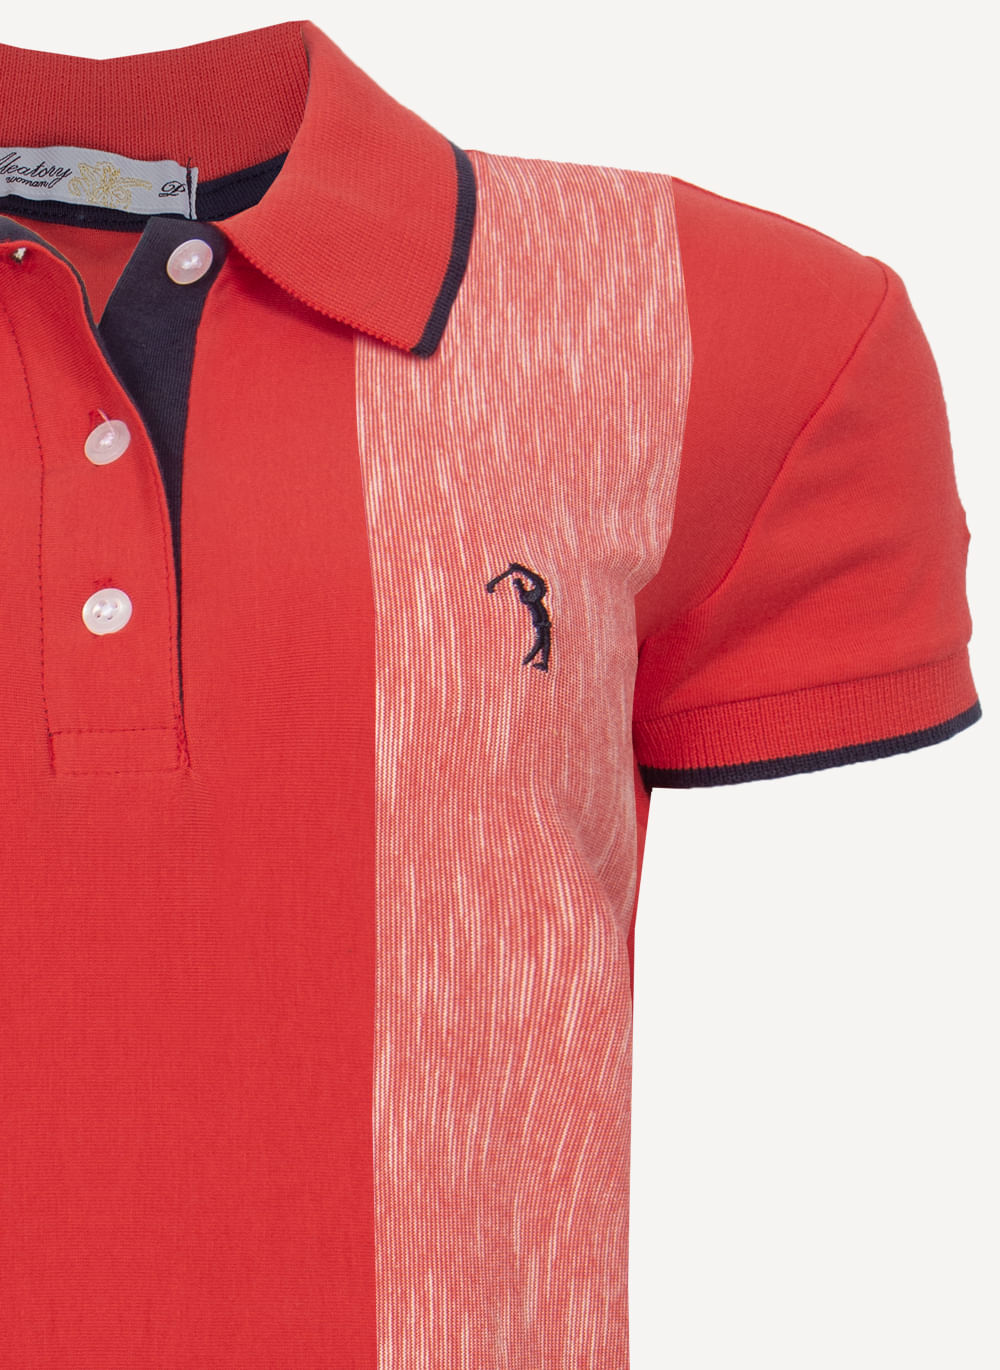 Camisa-Polo-Aleatory-Feminina-Listrada-Lany-Vermelha-Vermelho-P